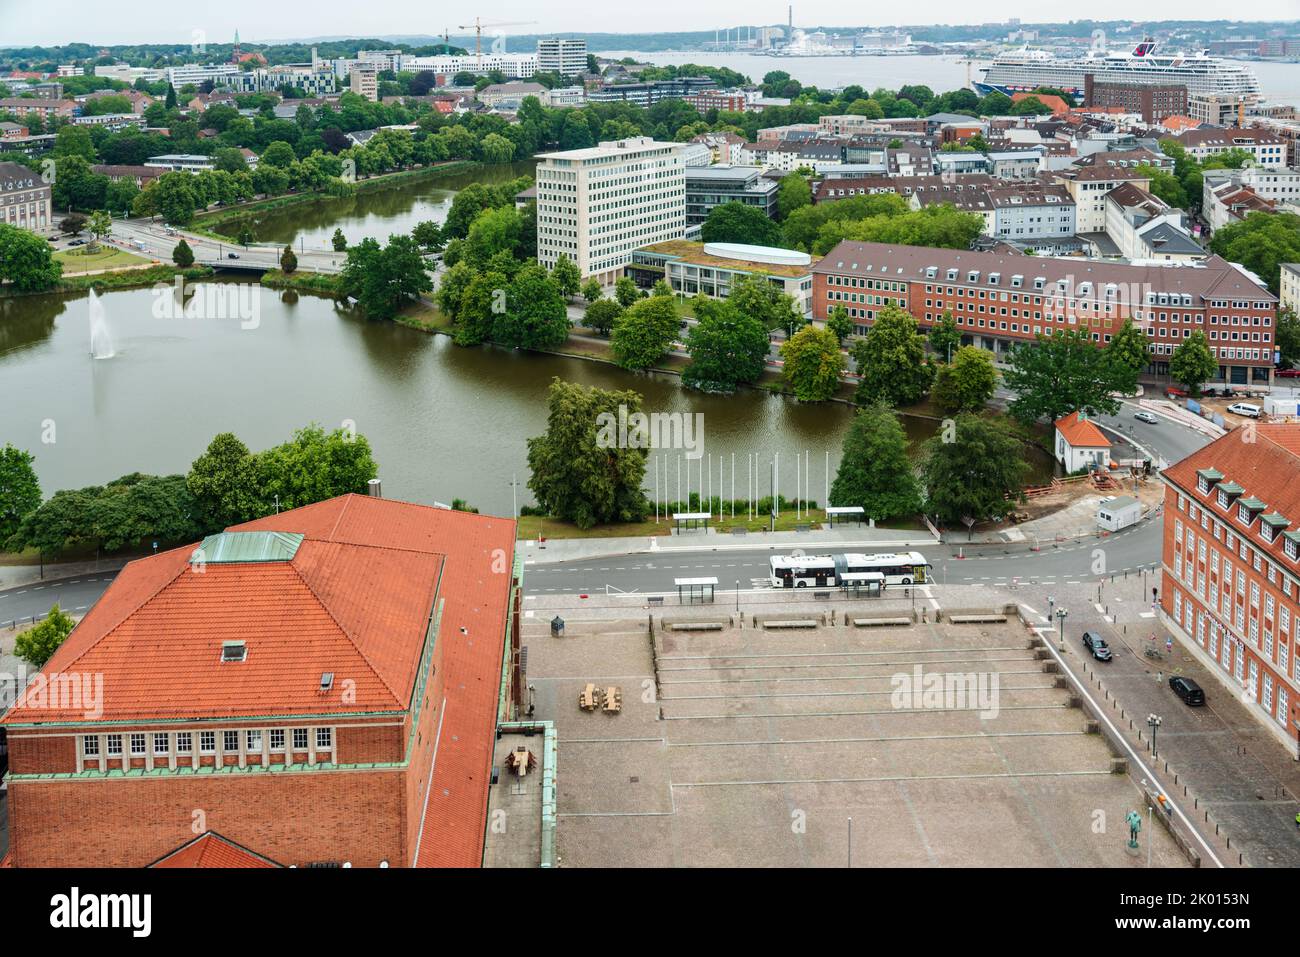 Kiel - Luftaufnahme Innenstadt Kiel und Hafen im Vordergrund der Rathausplatz und das Opernhaus am Kleinen Kiel Stock Photo